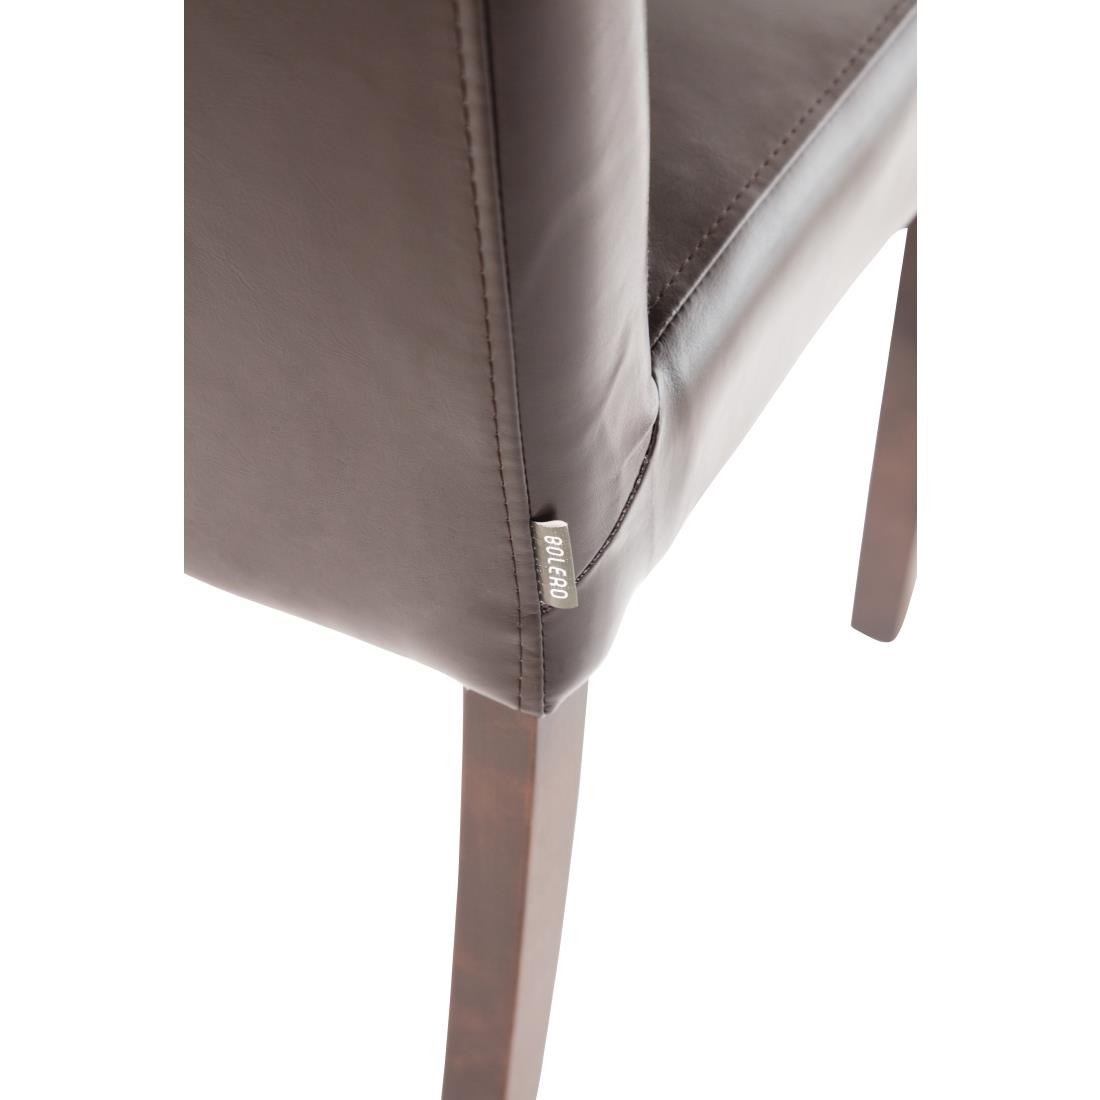 Esszimmerstühle | 2 Stück | Kunstleder und Birkenholz | Erhältlich in 2 Farben